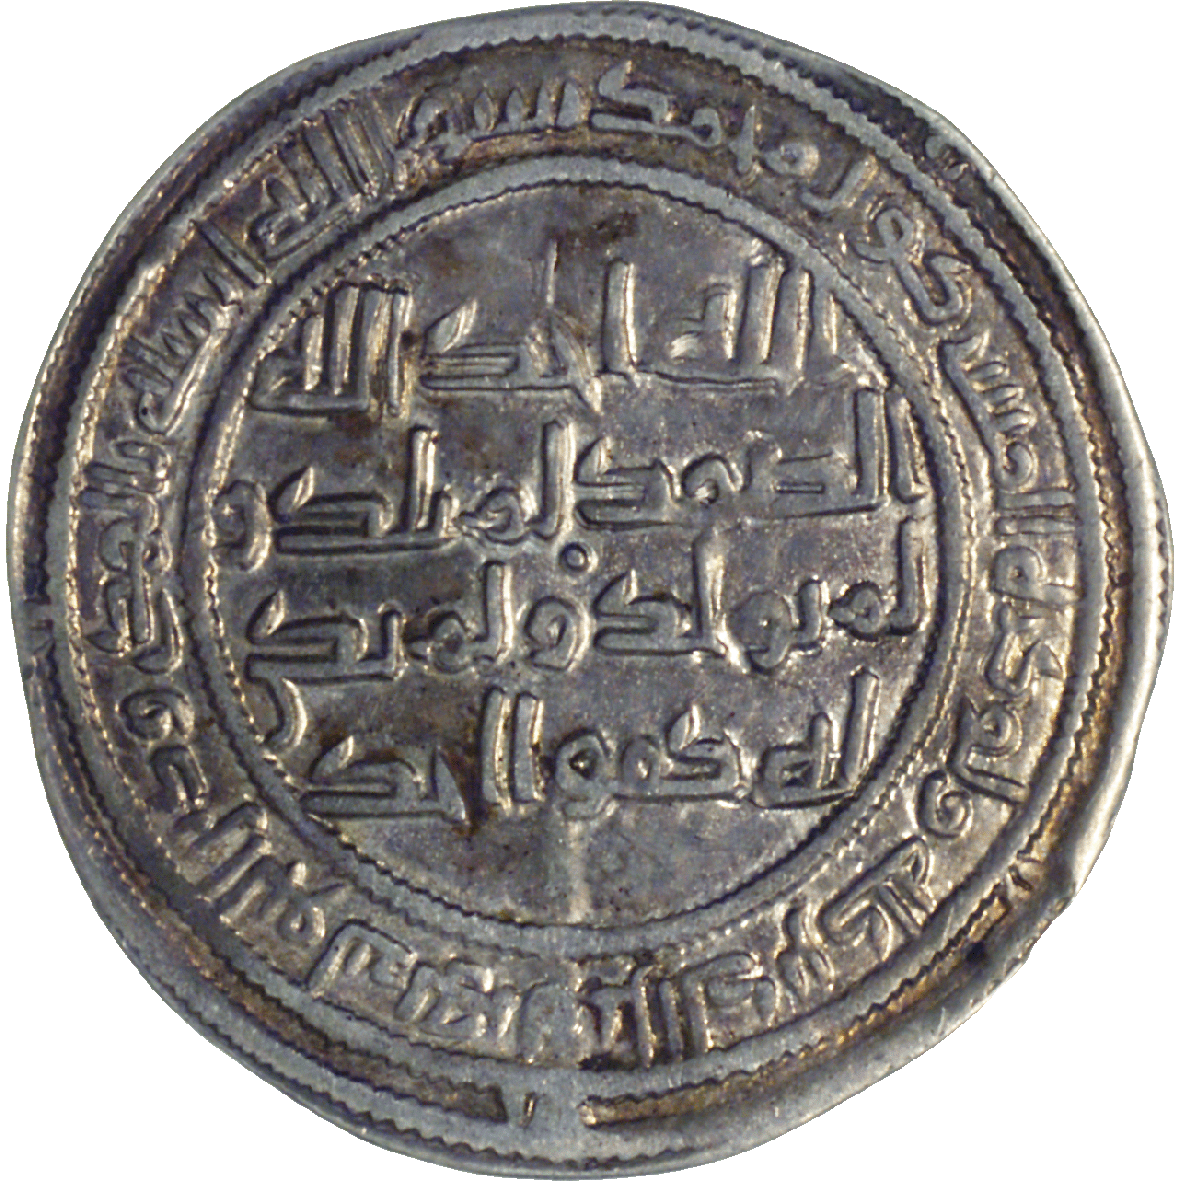 Omaijadenreich, Al-Walid I., Dirhem 92 AH (obverse)